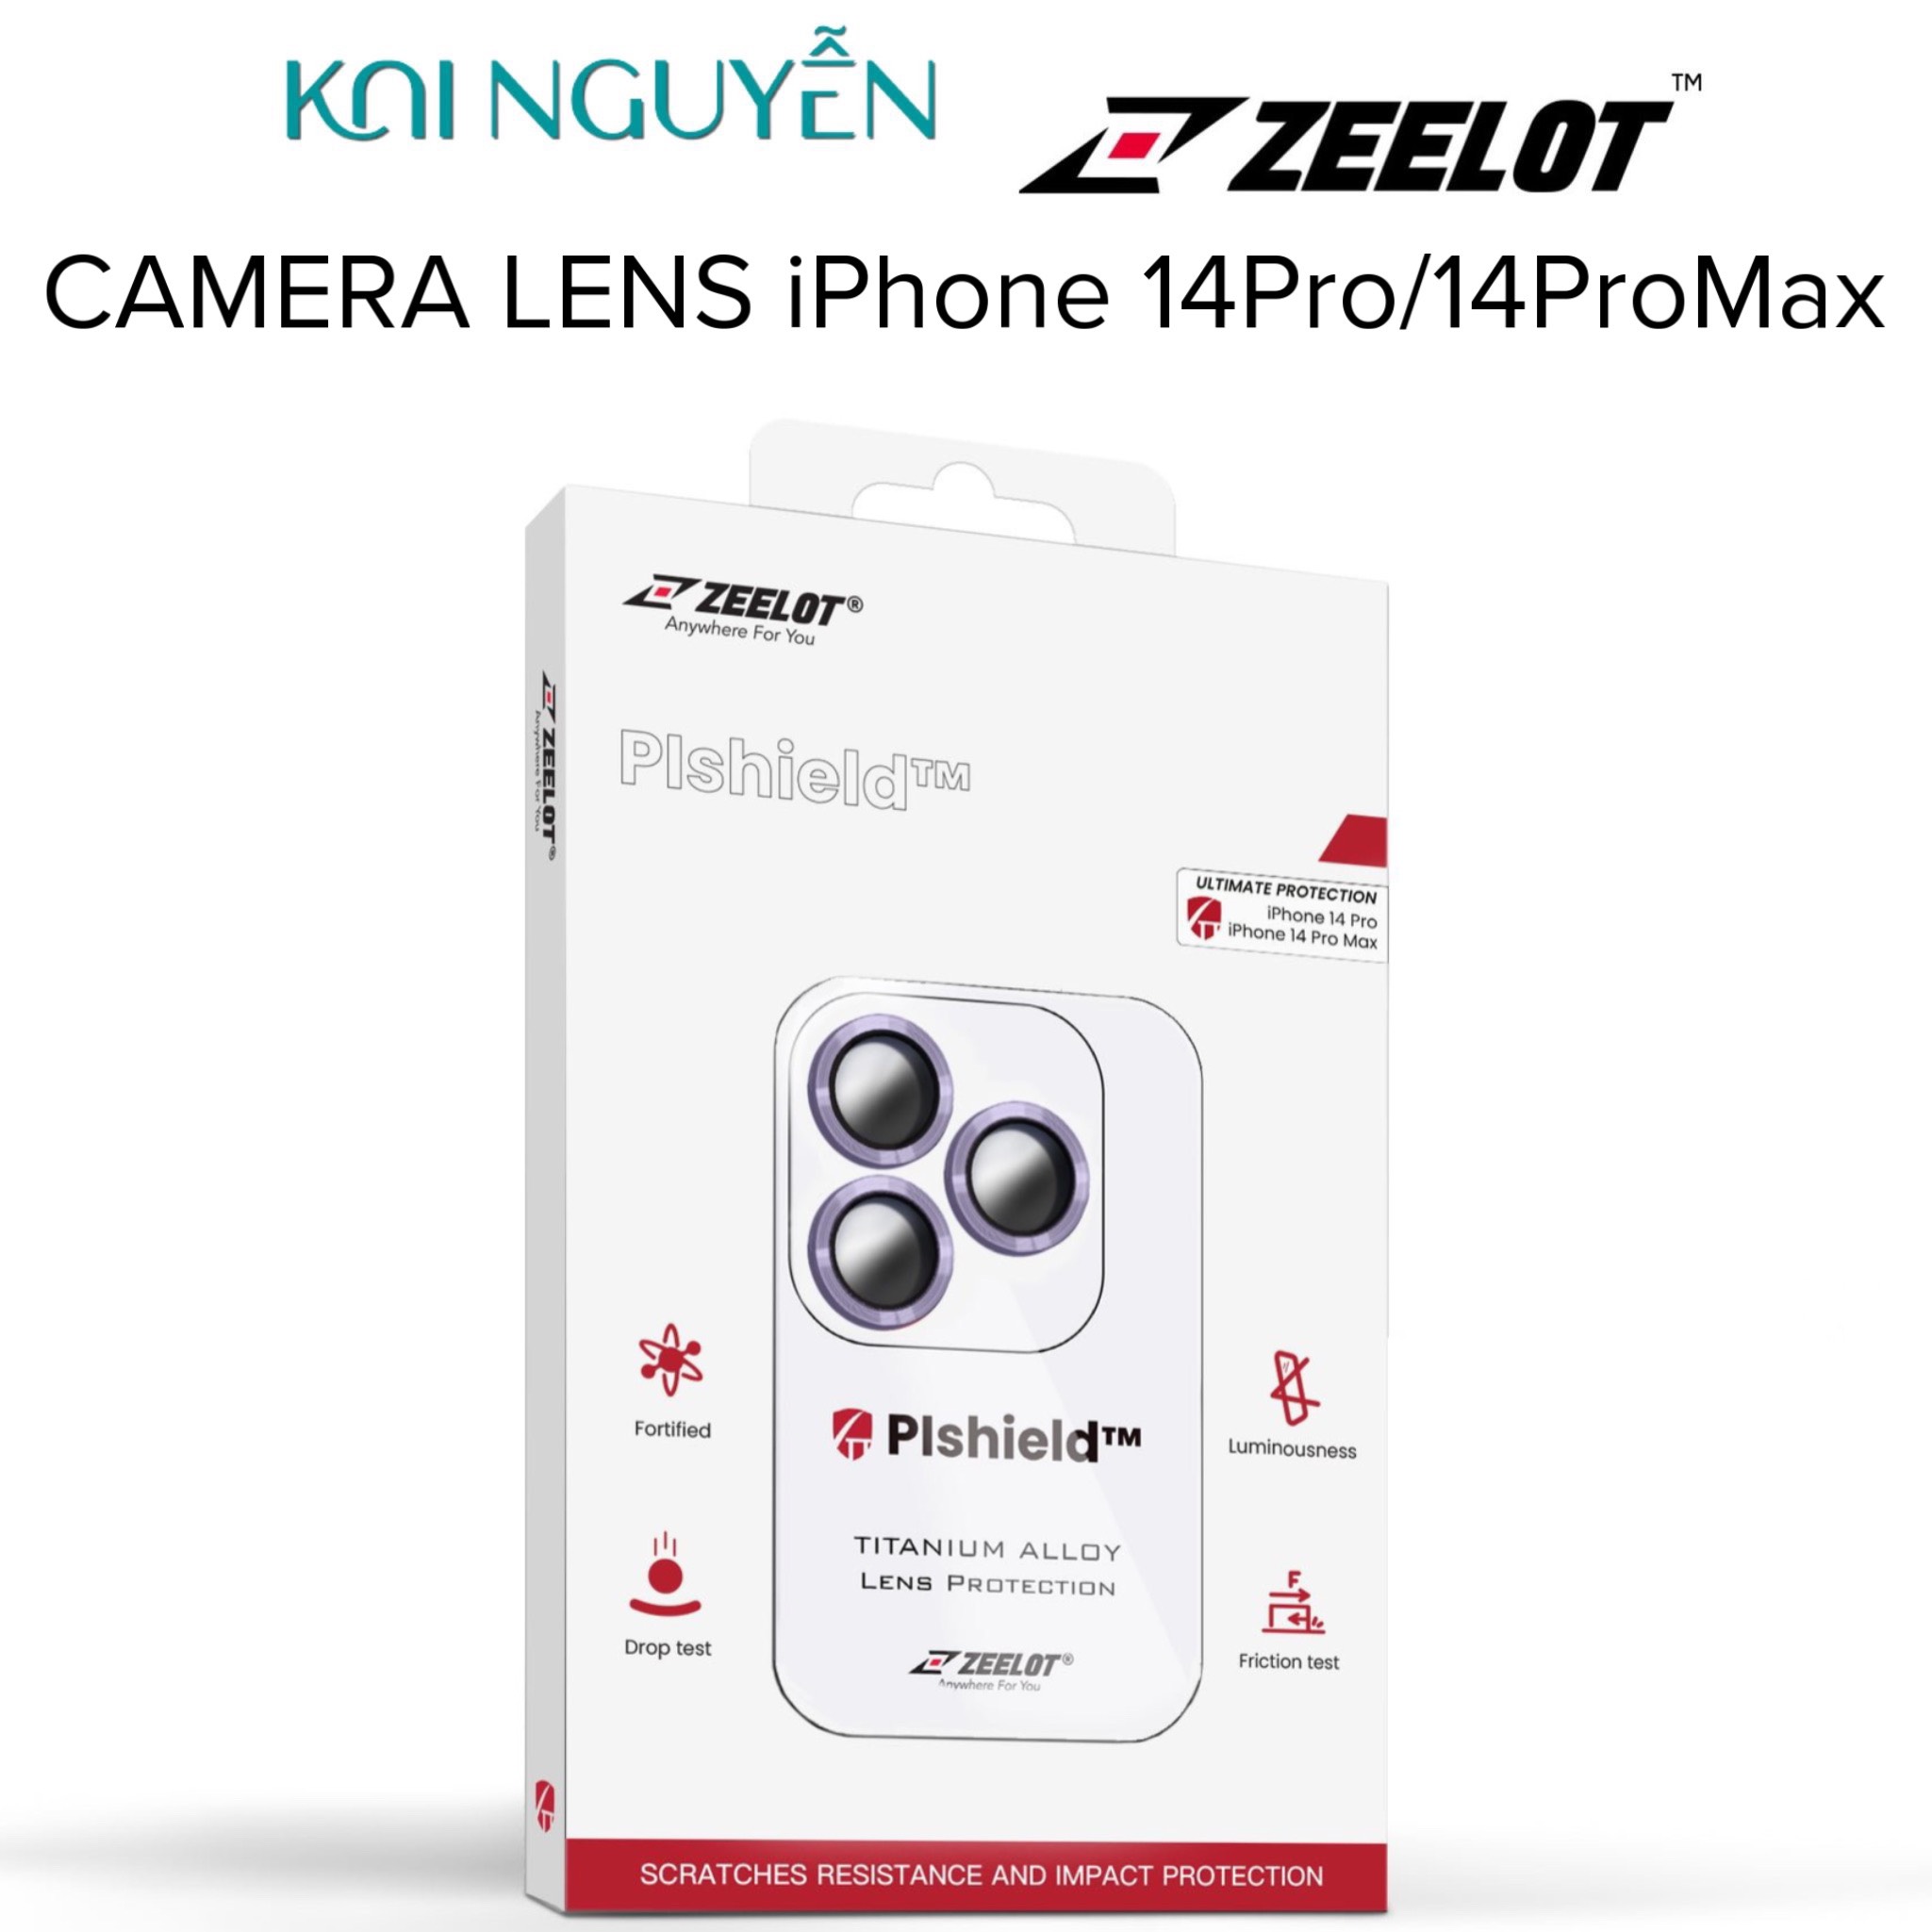 Miếng Dán Kính Cường Lực Camera Lens ZEELOT PISHIELD Dành Cho iPhone 14 Pro / 14 ProMax - Hàng Chính Hãng